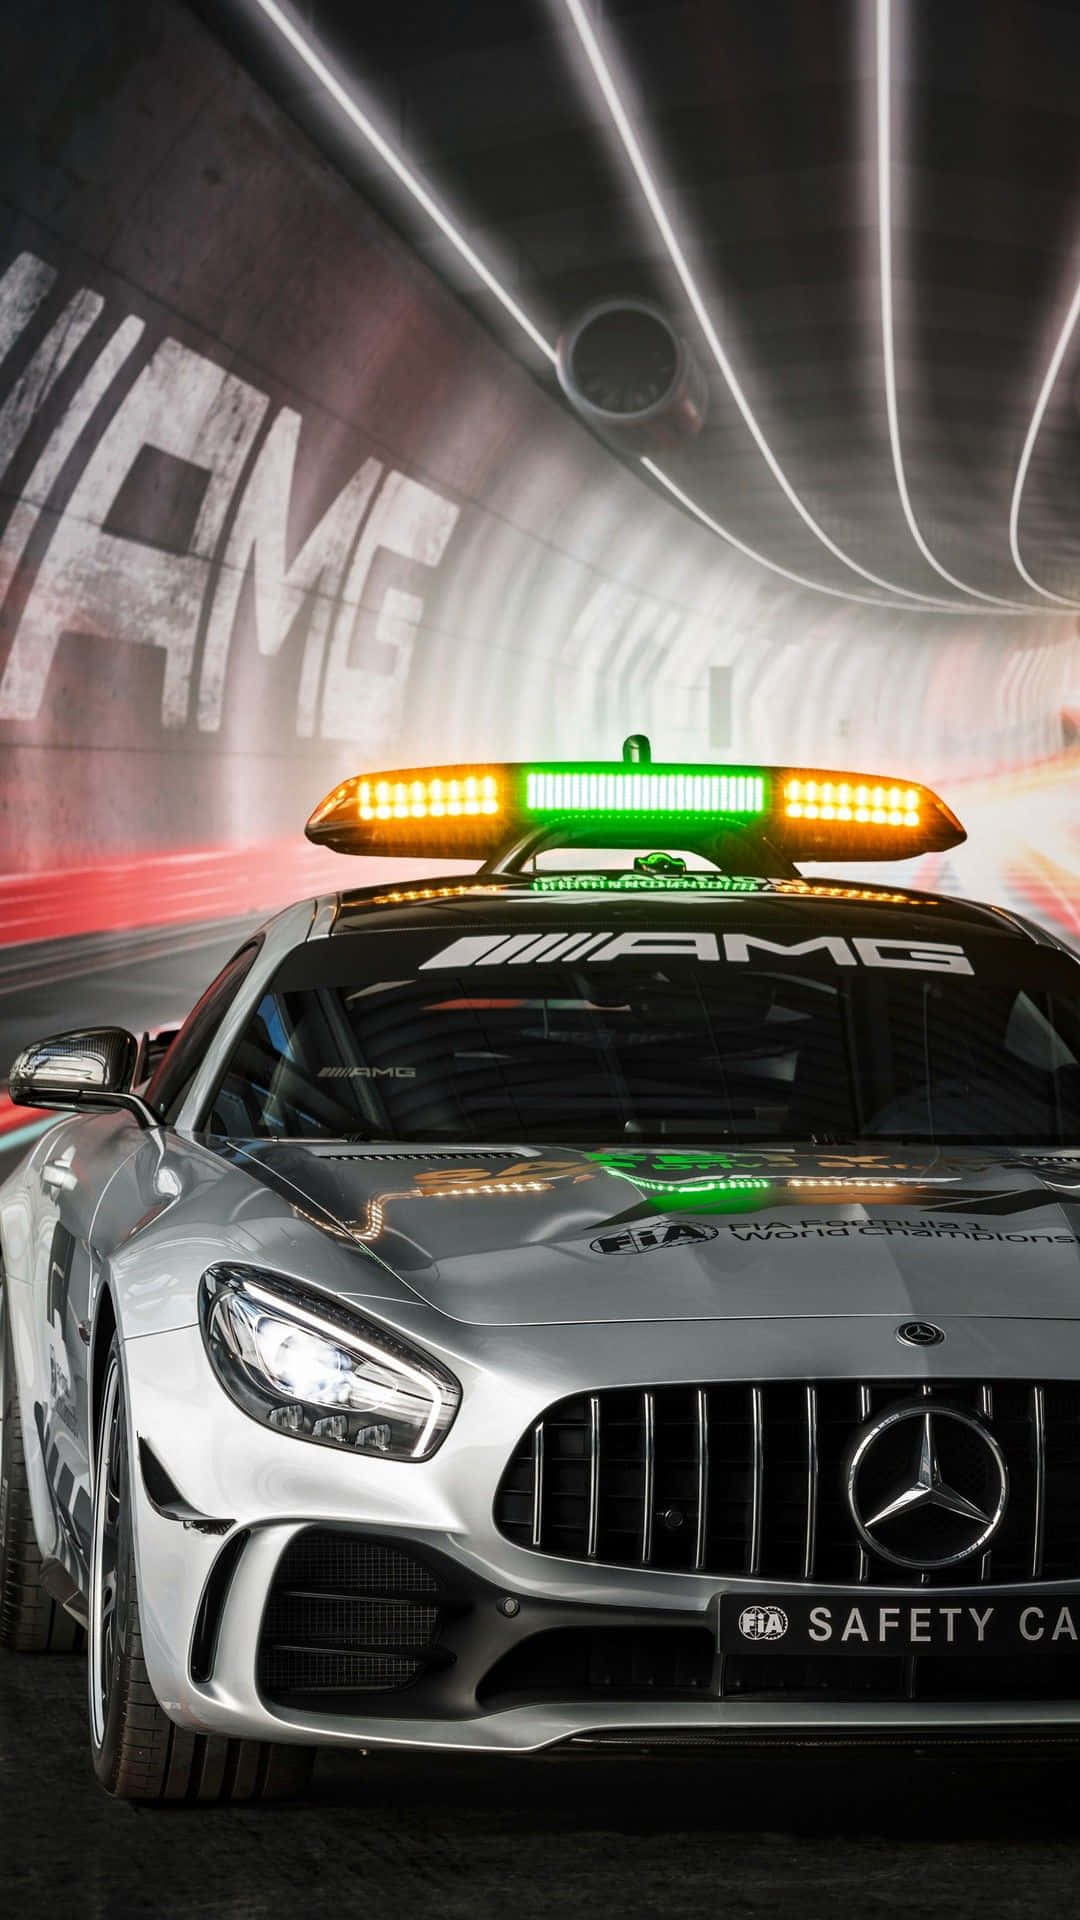 Mercedes AMG GT-klasse sikkerhedsbil i en tunnel